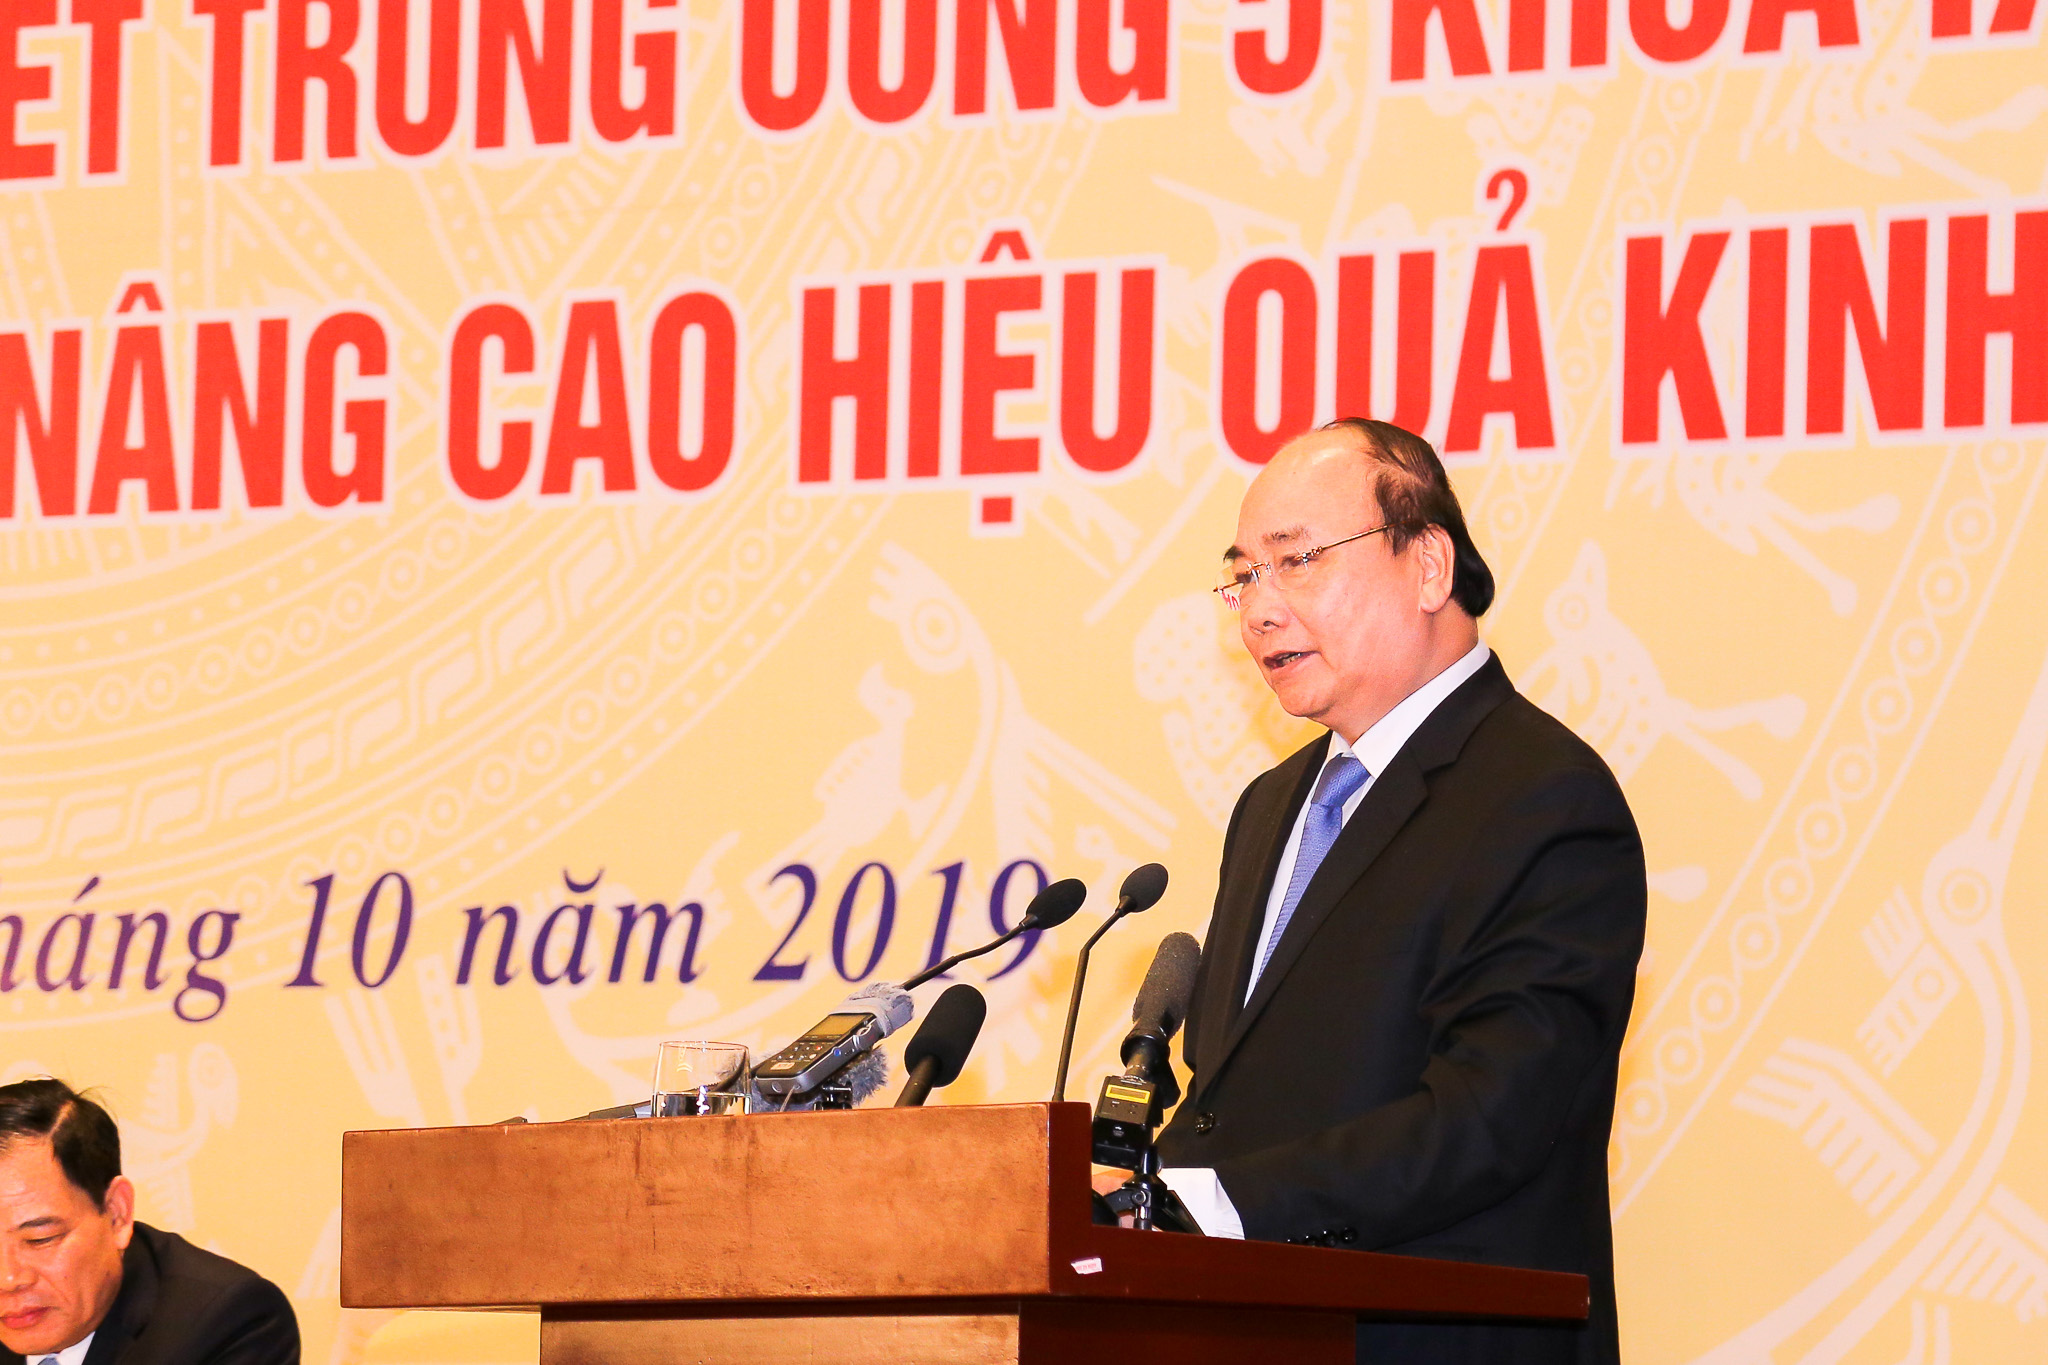 Đồng chí Nguyễn Xuân Phúc, Ủy viên Bộ Chính trị, Thủ tướng Chính phủ phát biểu chỉ đạo tại Hội nghị

